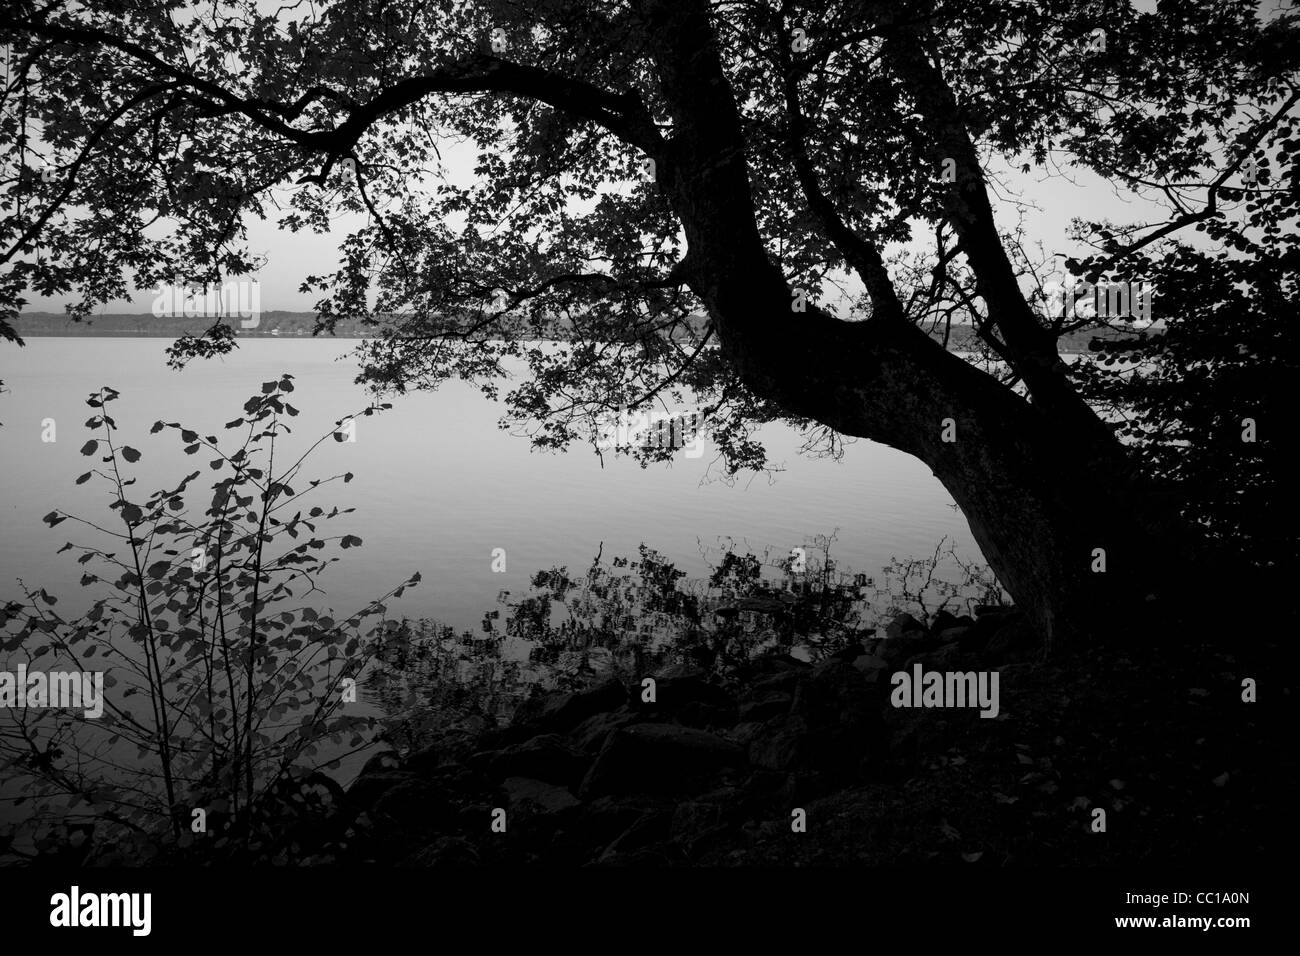 Image en noir et blanc d'un arbre penché frames d'autres plantes et laisser silhouettes près du lac dans la lumière du soir. Banque D'Images